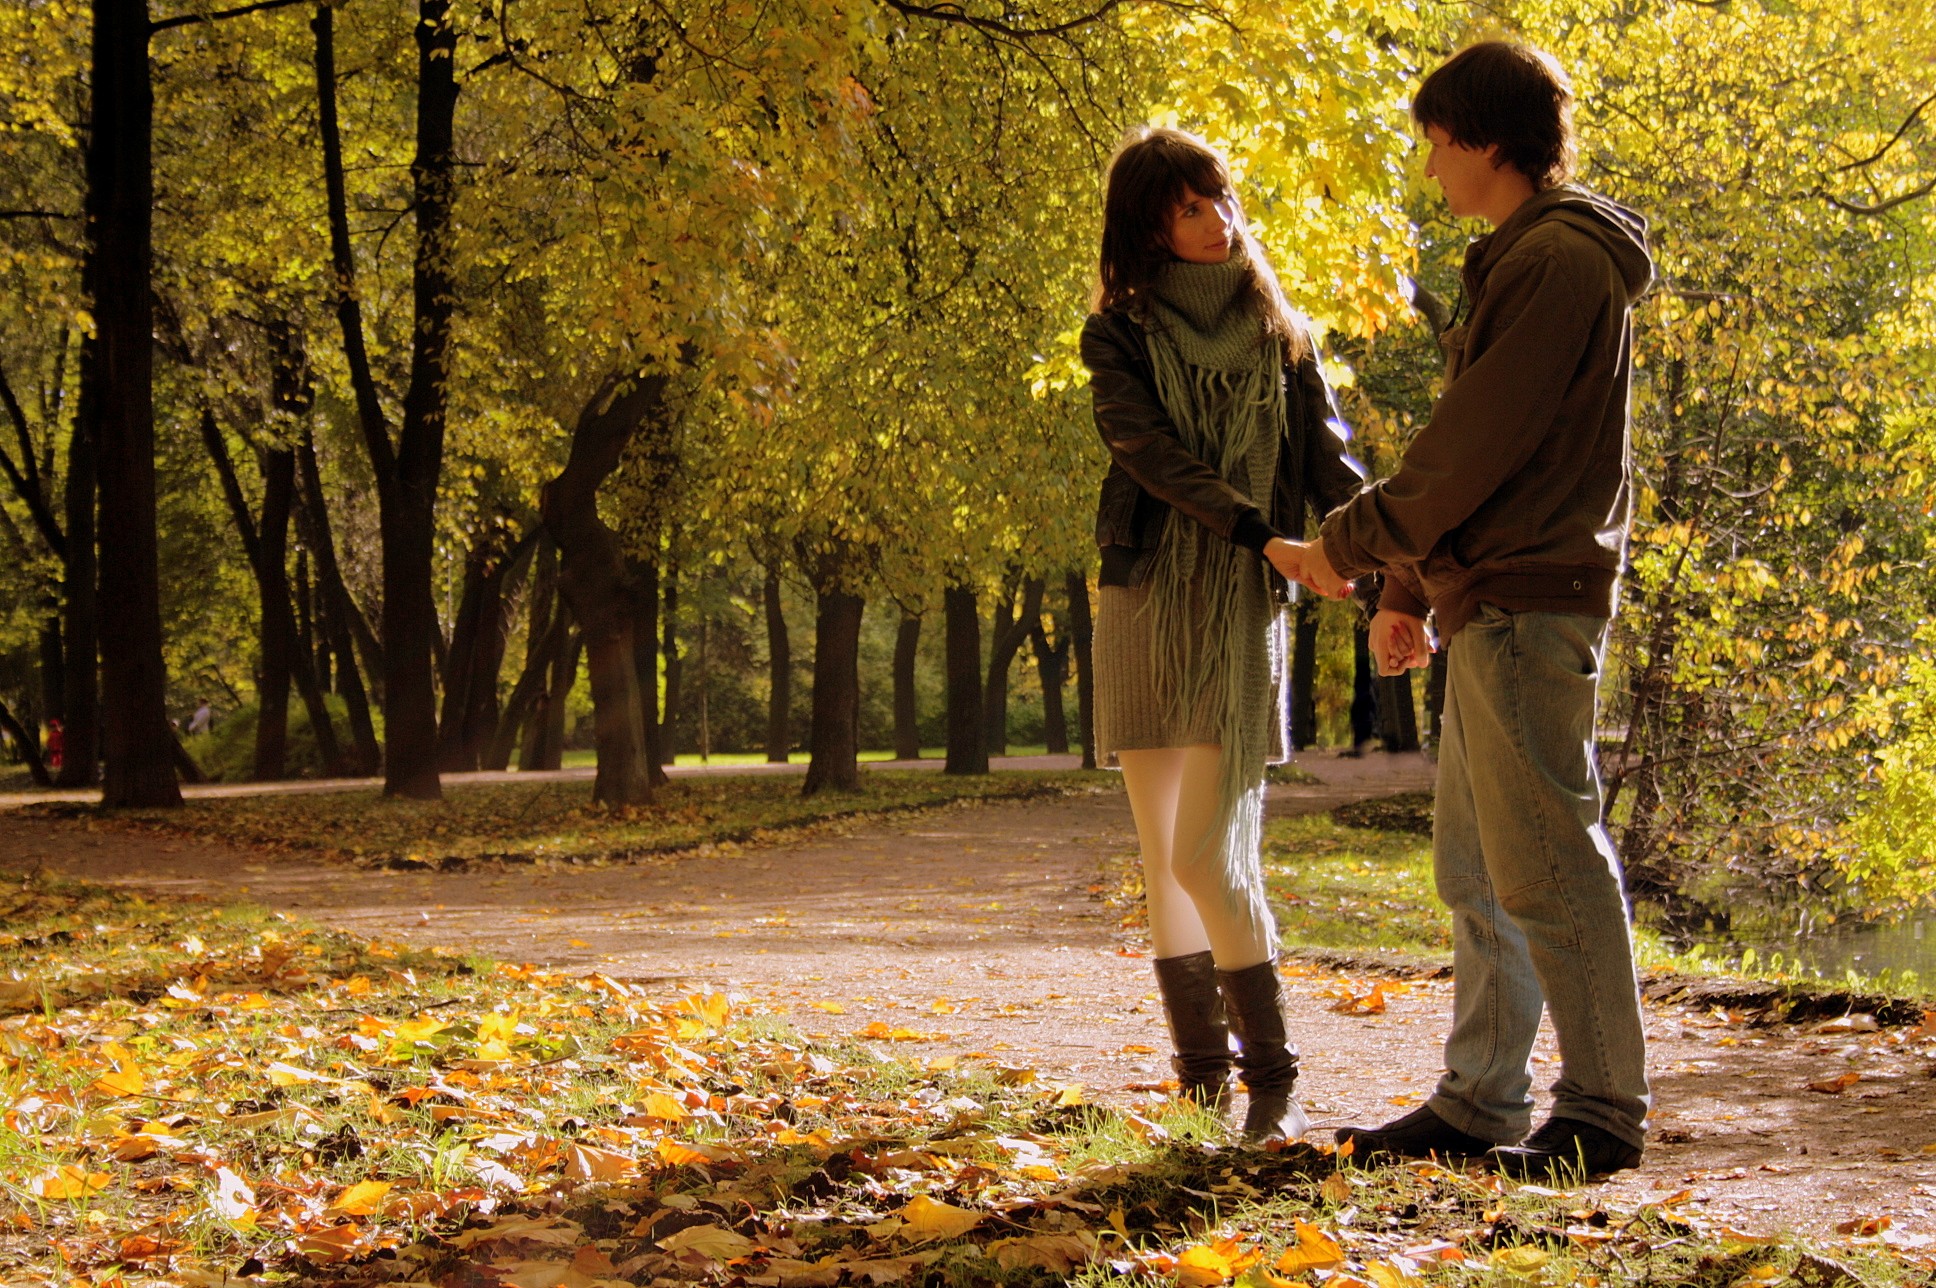 Вечером пойду прогуляюсь. Парень и девушка в парке осенью. Прогулка в осеннем парке. Осень в парке. Парень с девушкой в осеннем парке.